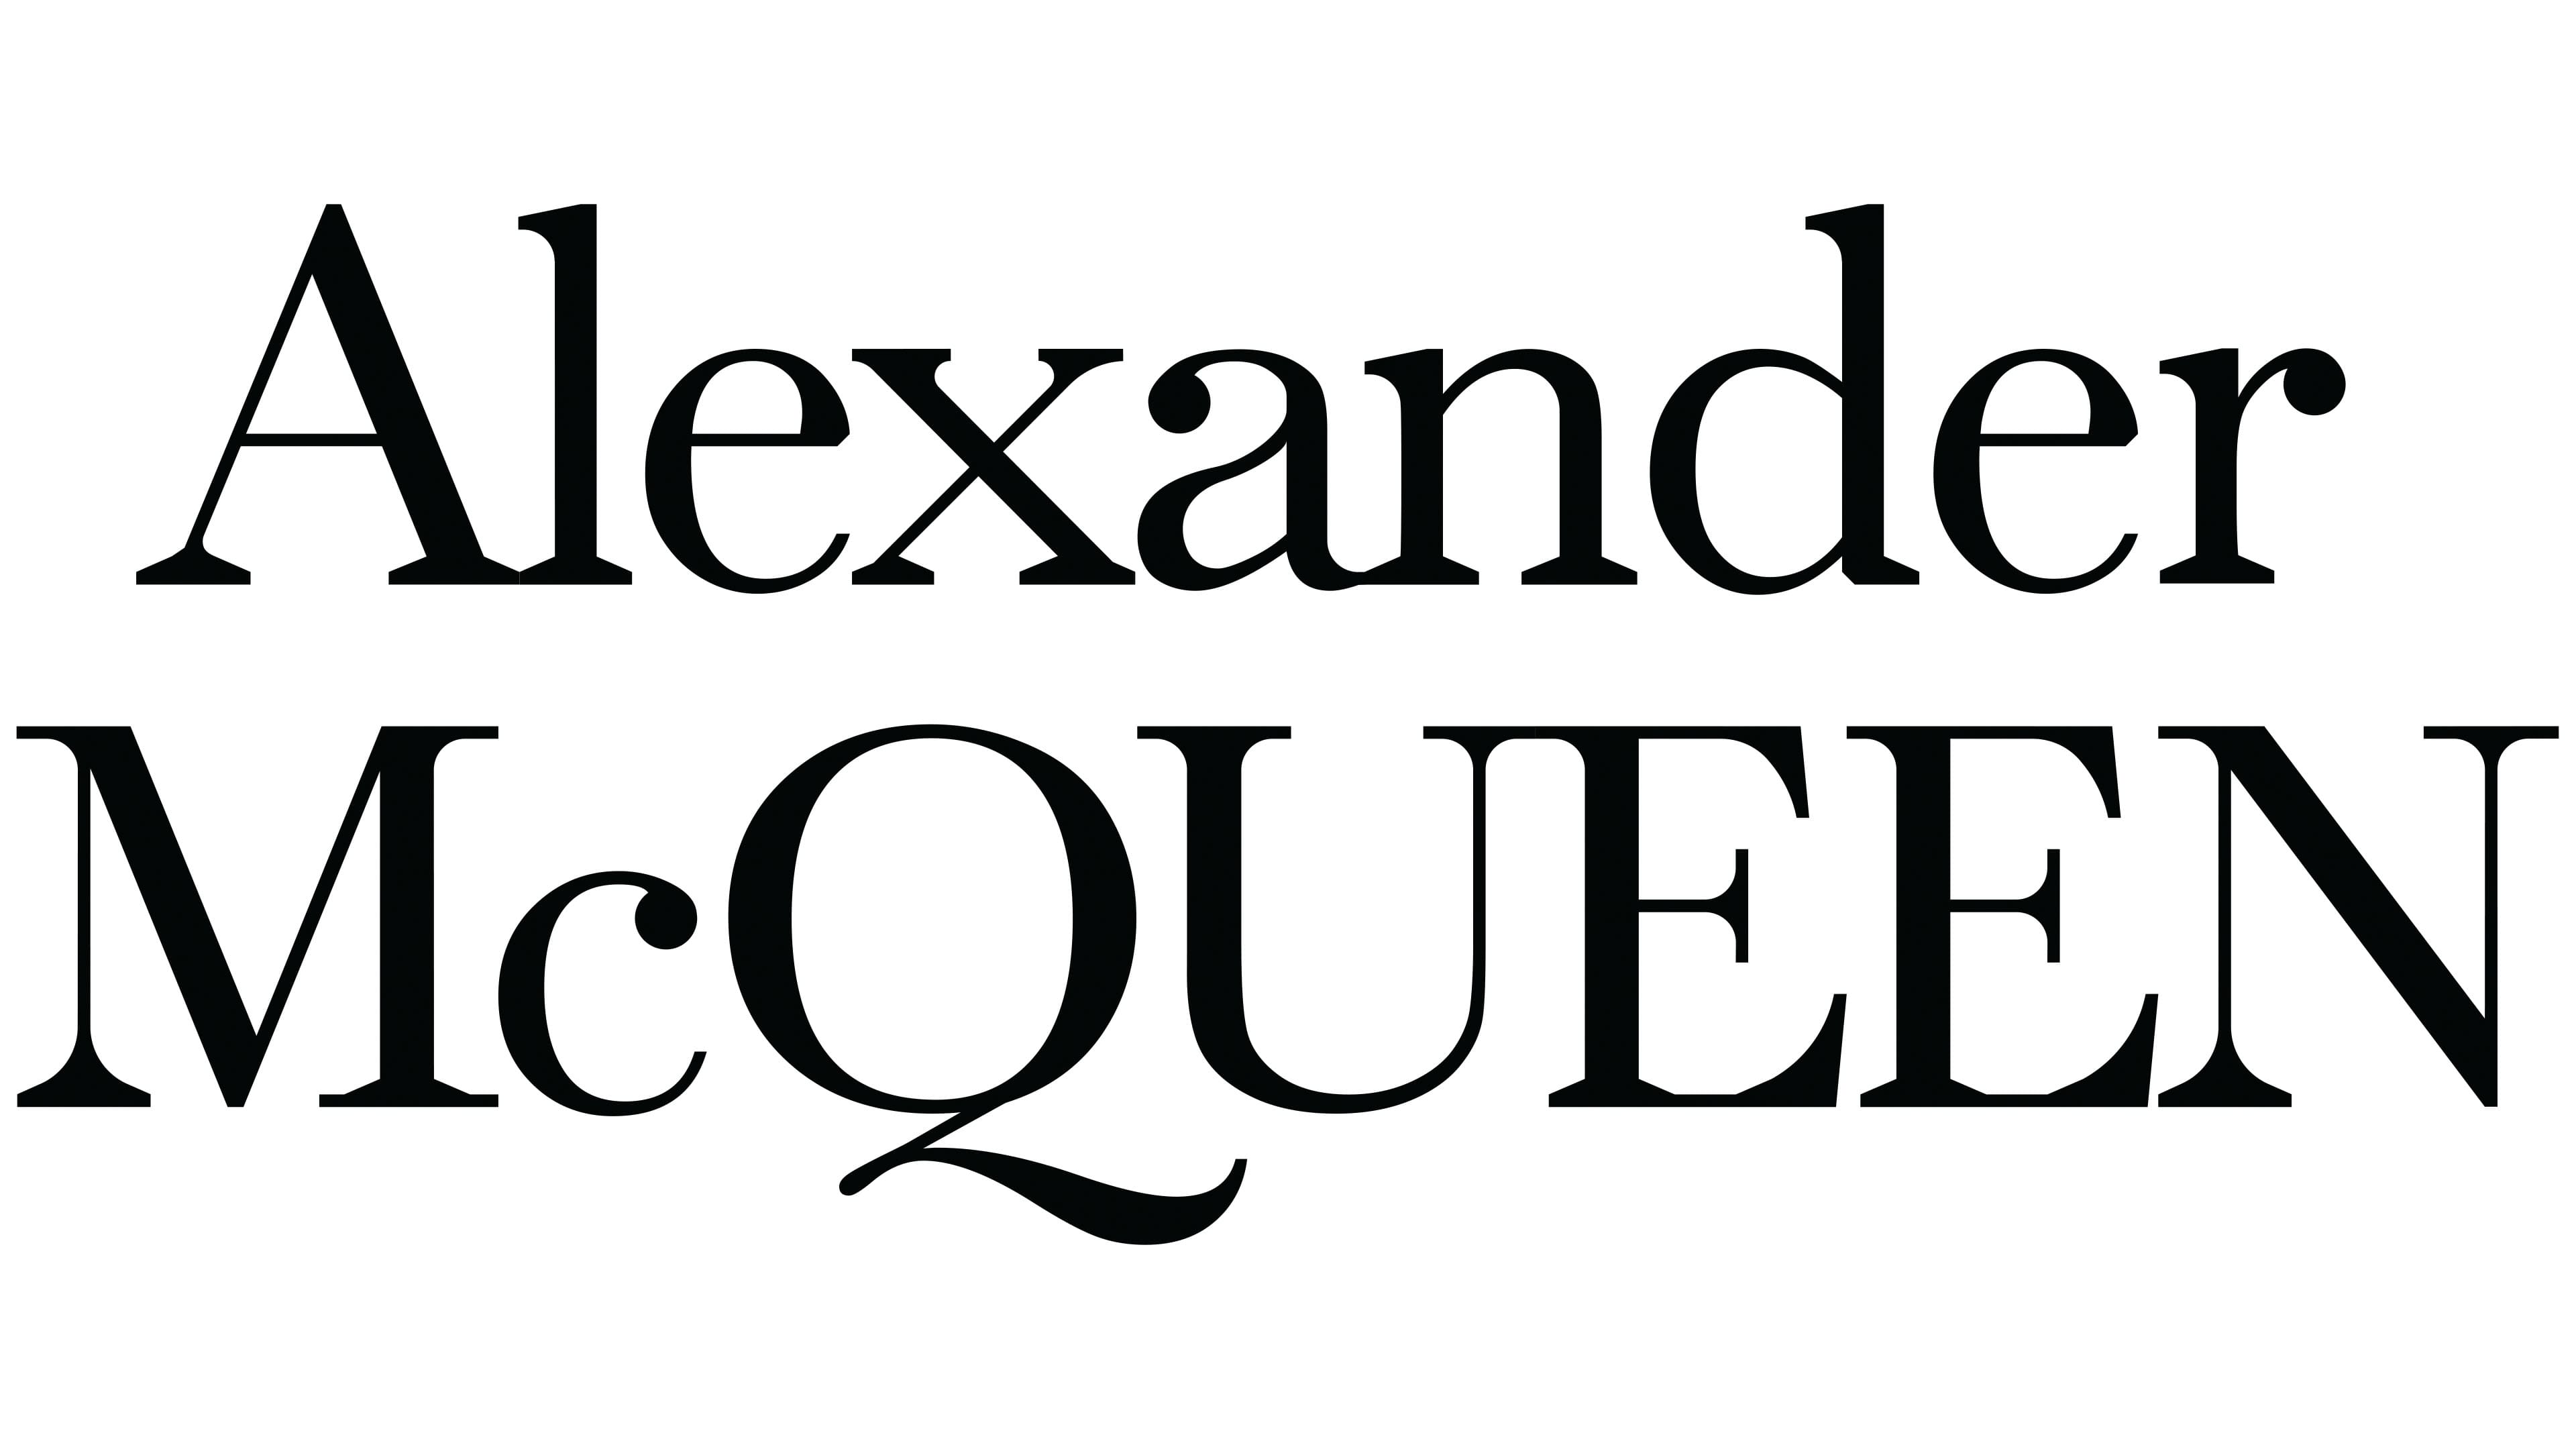 bereik lastig Fragiel Alexander McQueen Logo, symbol, meaning, history, PNG, brand